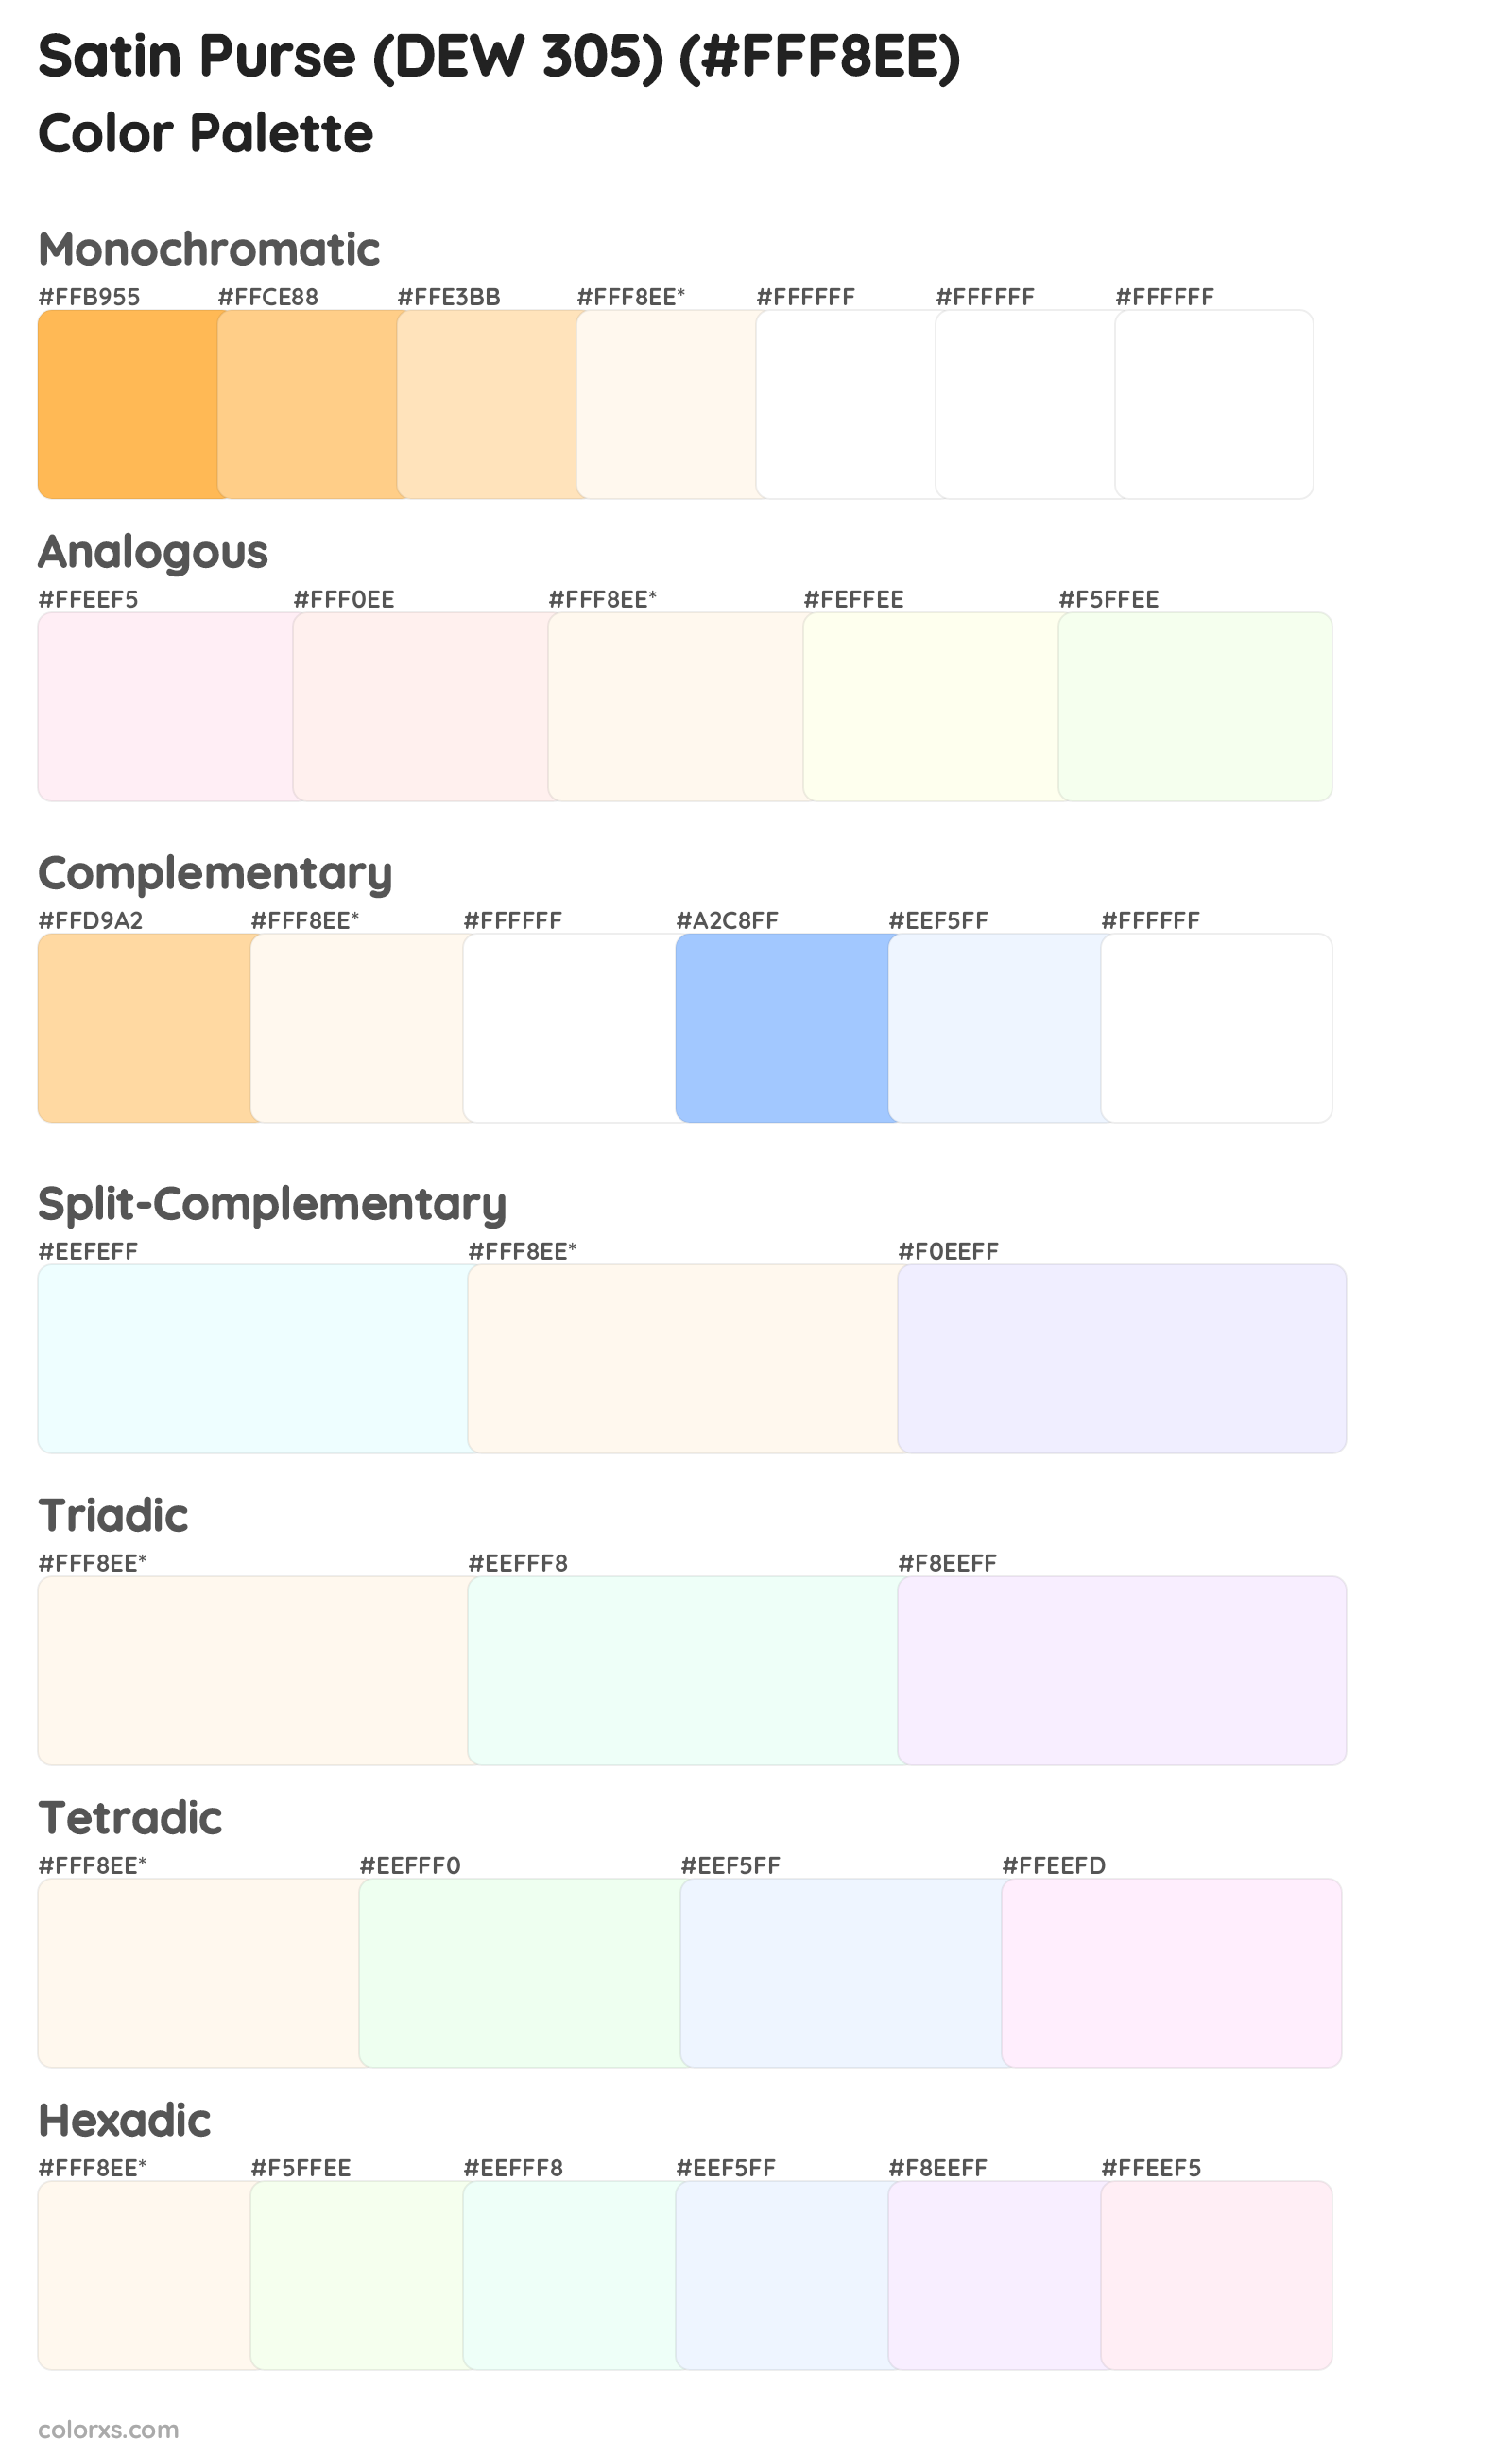 Satin Purse (DEW 305) Color Scheme Palettes